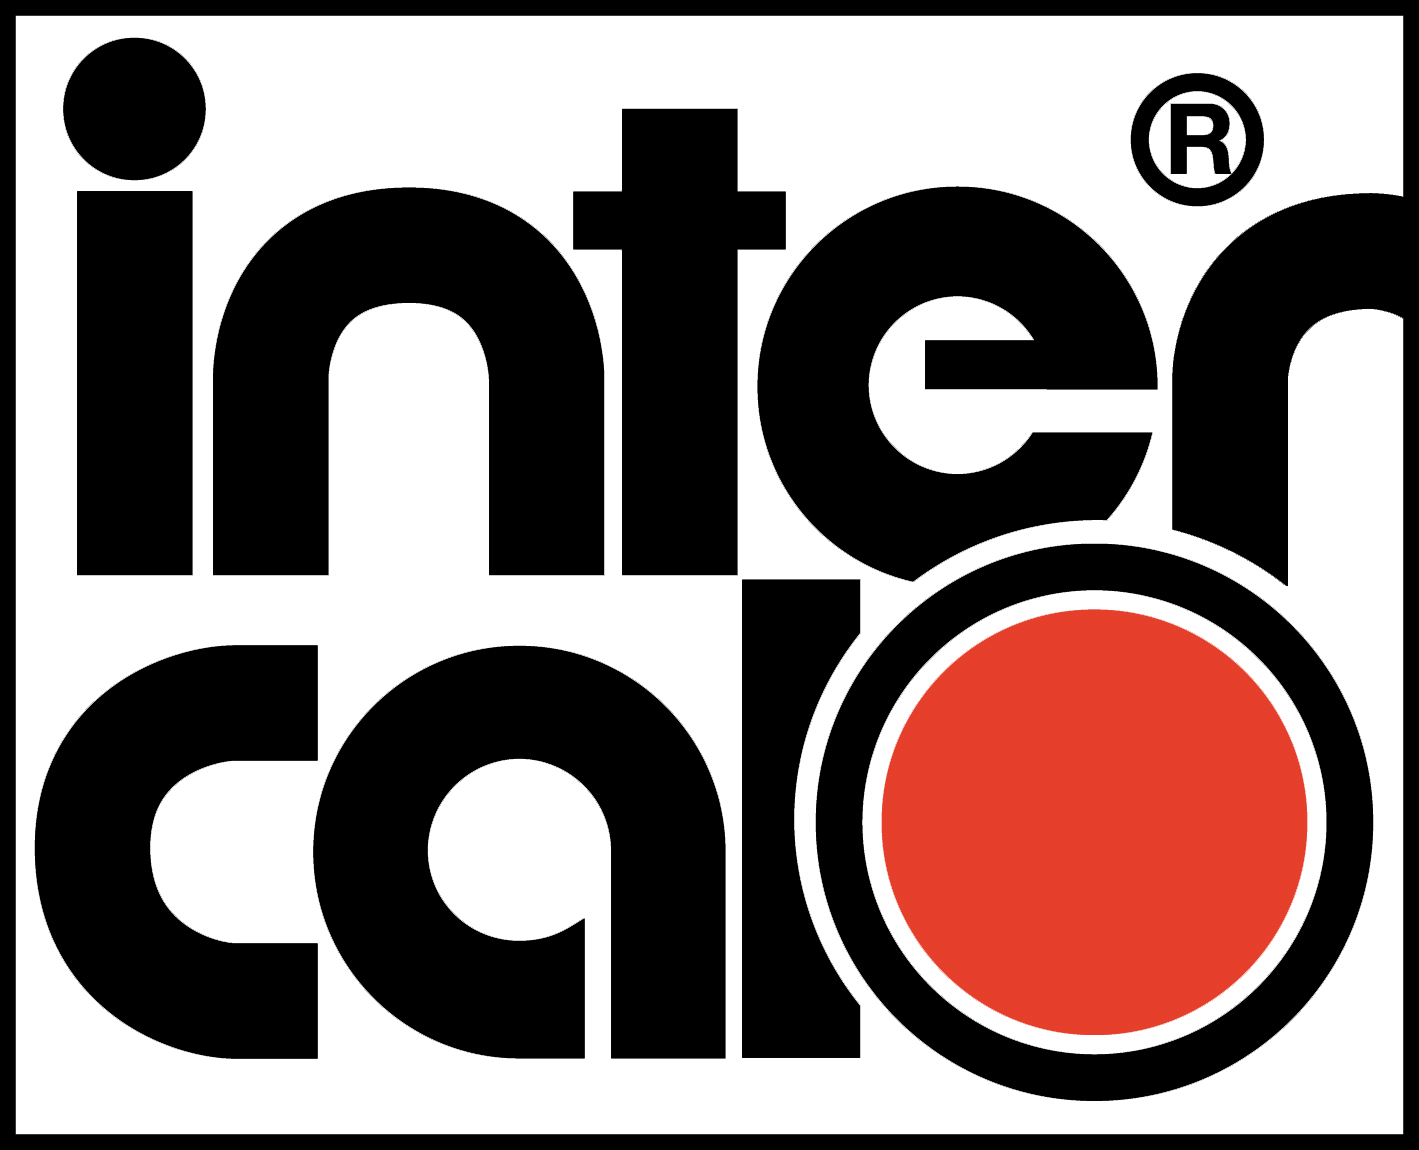 (c) Intercal.de